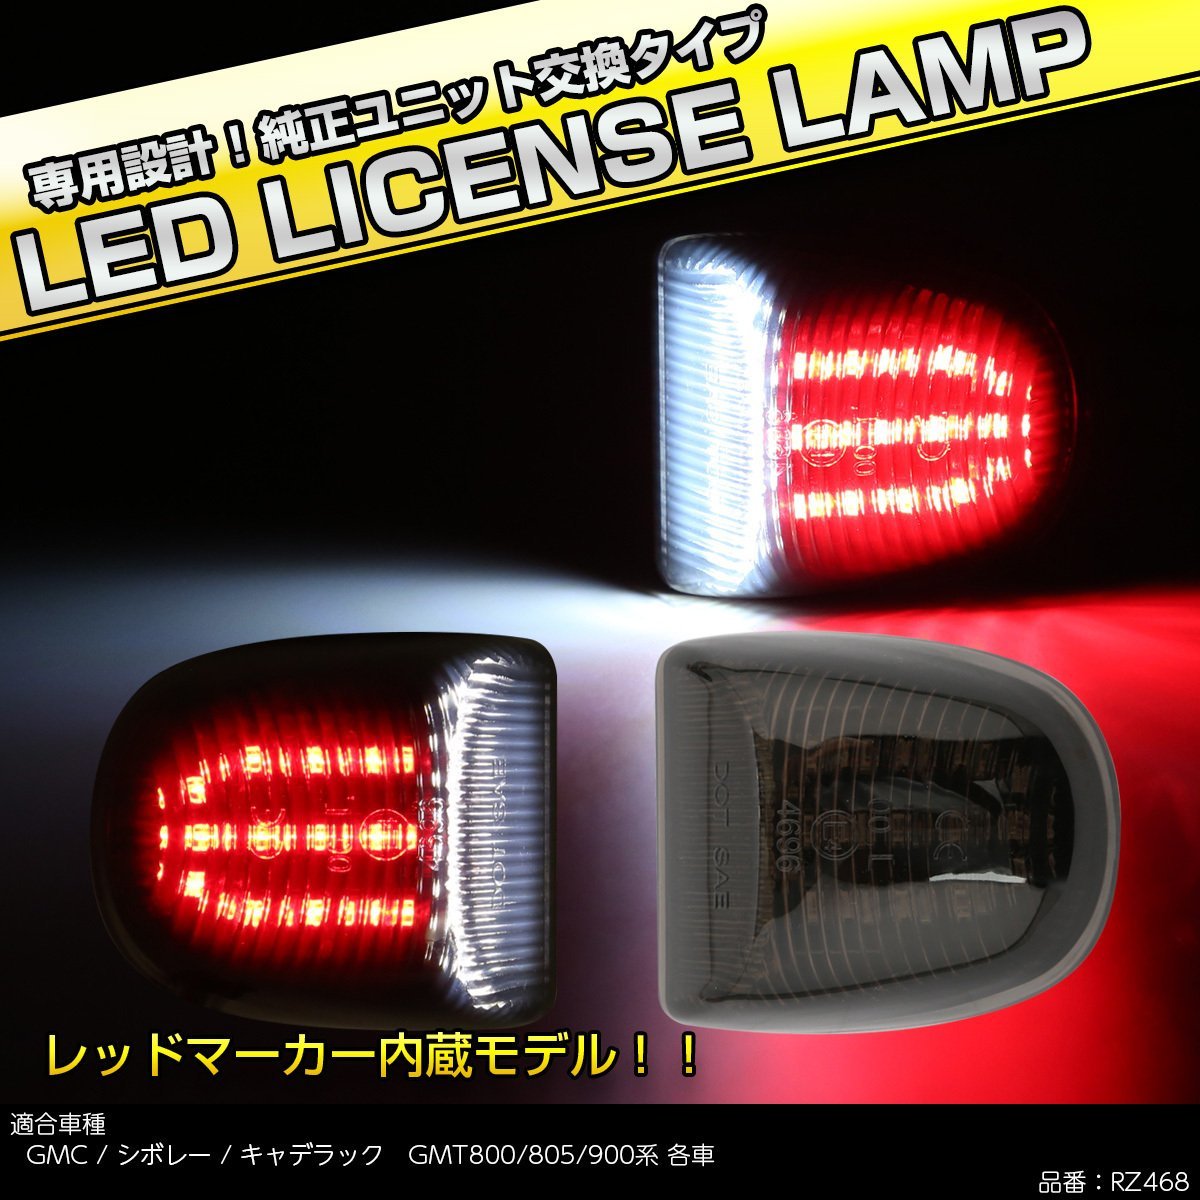 LED ライセンスランプ GMC シエラ ユーコン ナンバー灯 6500K ホワイト レッドマーカー付き RZ468_画像1